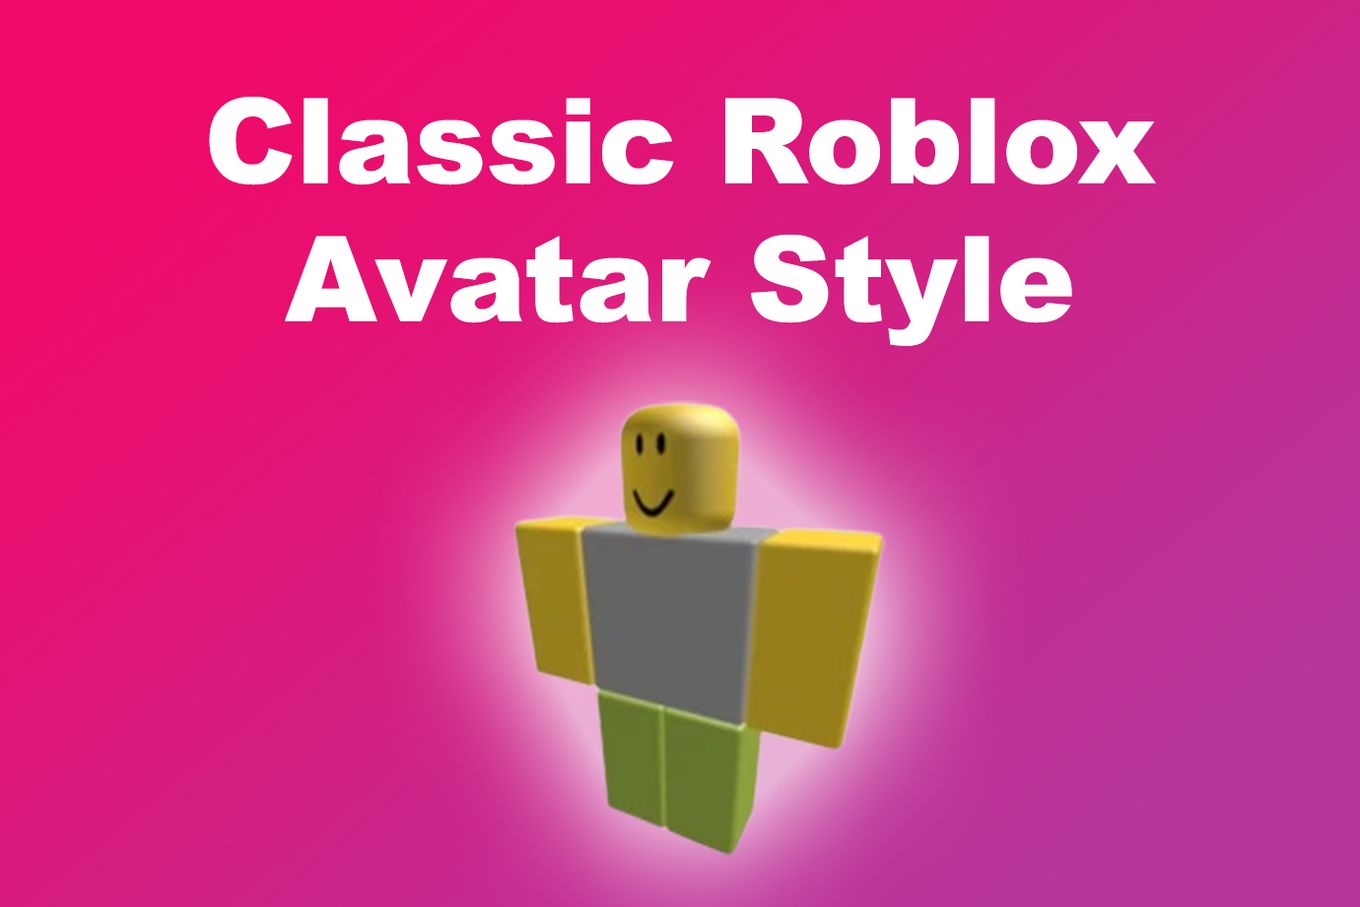 Hướng dẫn làm HÌNH ĐẠI DIỆN hình ĐẦU NHÂN VẬT ROBLOX Avatar Roblox Head   YouTube